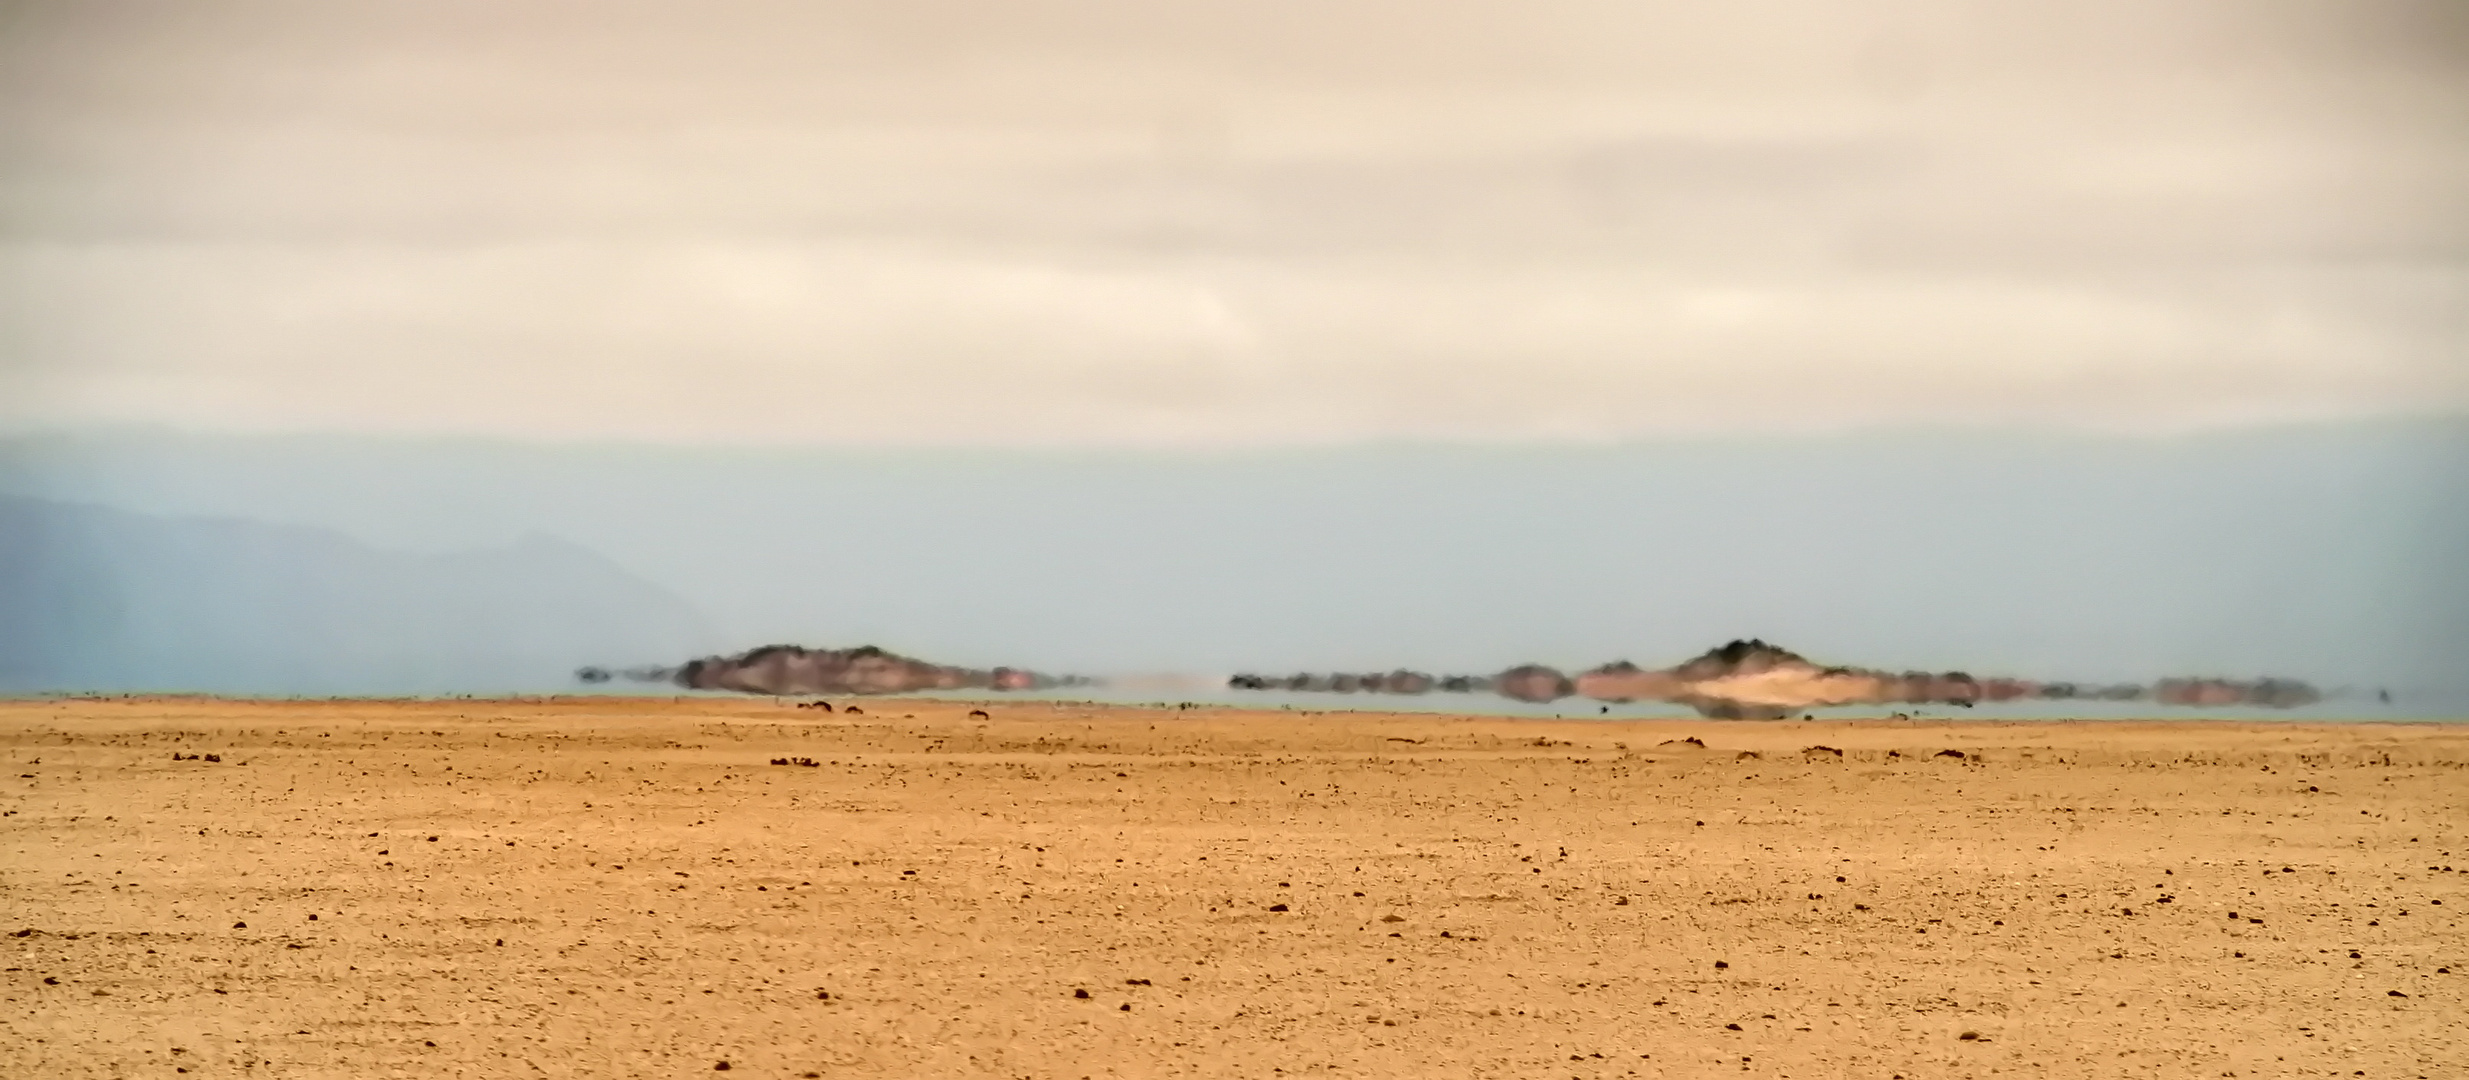 Fata morgana in der Namib